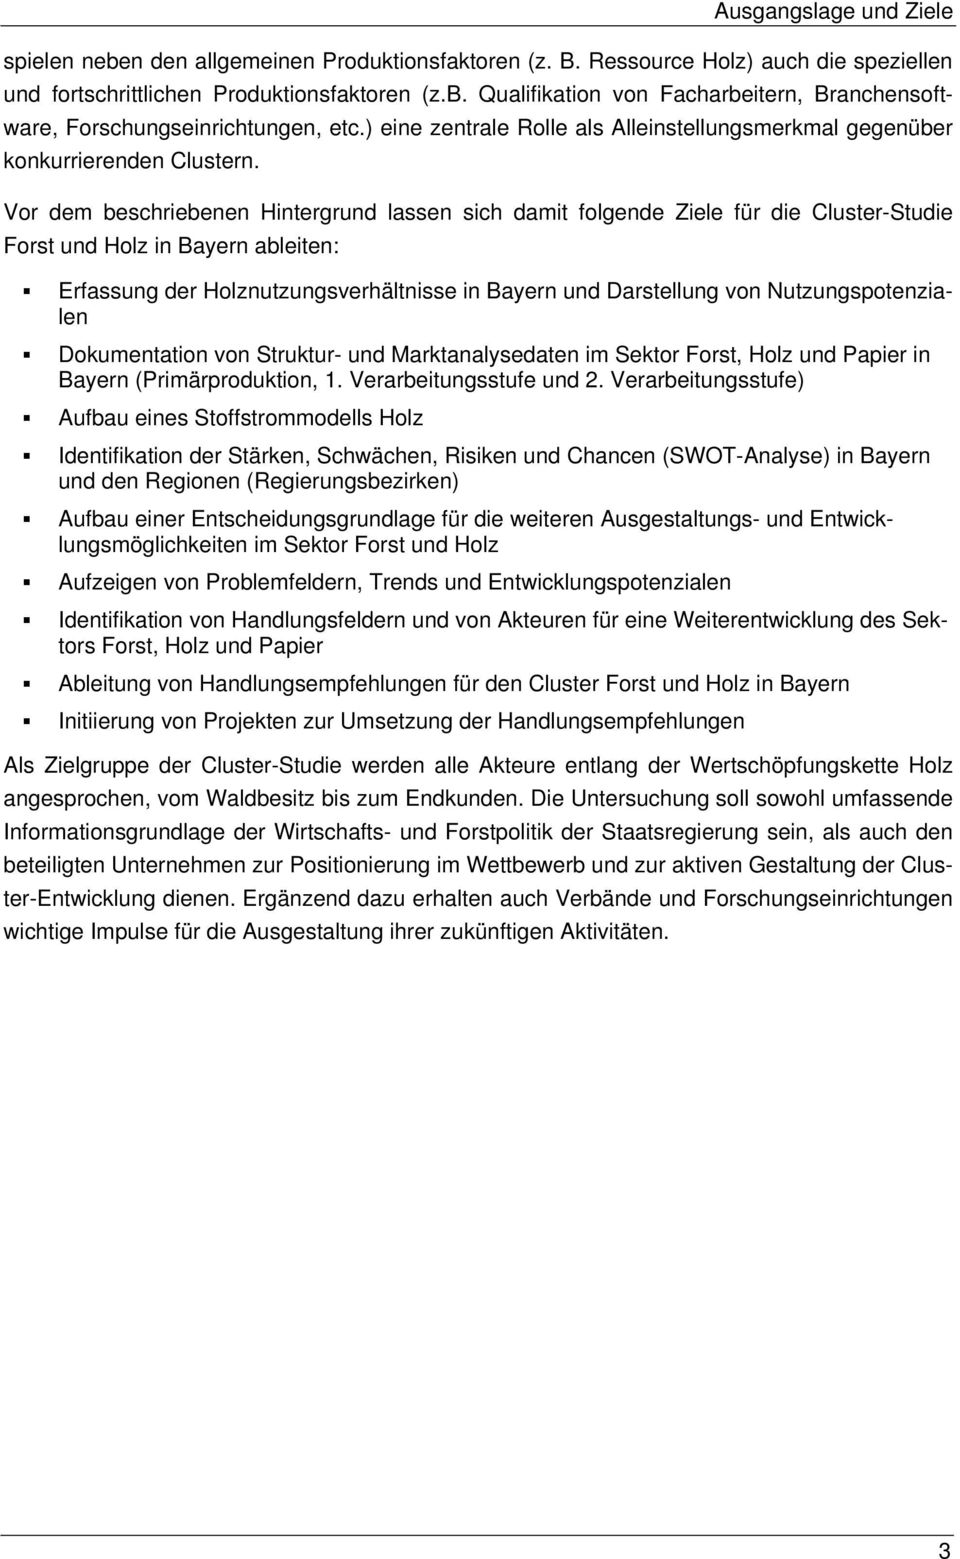 Vor dem beschriebenen Hintergrund lassen sich damit folgende Ziele für die Cluster-Studie Forst und Holz in Bayern ableiten: Erfassung der Holznutzungsverhältnisse in Bayern und Darstellung von